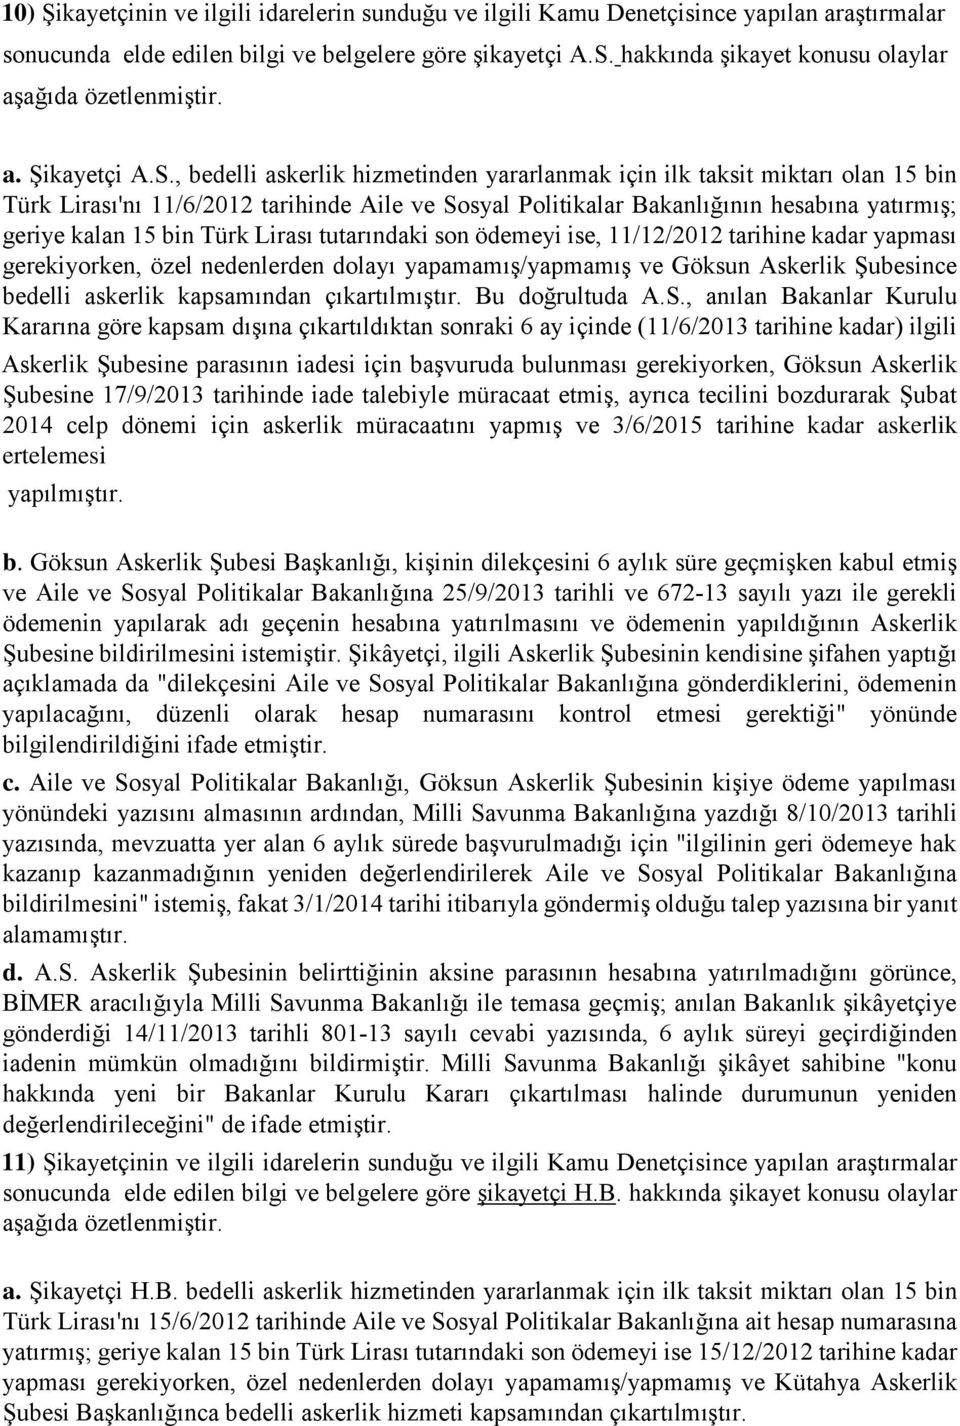 , bedelli askerlik hizmetinden yararlanmak için ilk taksit miktarı olan 15 bin Türk Lirası'nı 11/6/2012 tarihinde Aile ve Sosyal Politikalar Bakanlığının hesabına yatırmış; geriye kalan 15 bin Türk